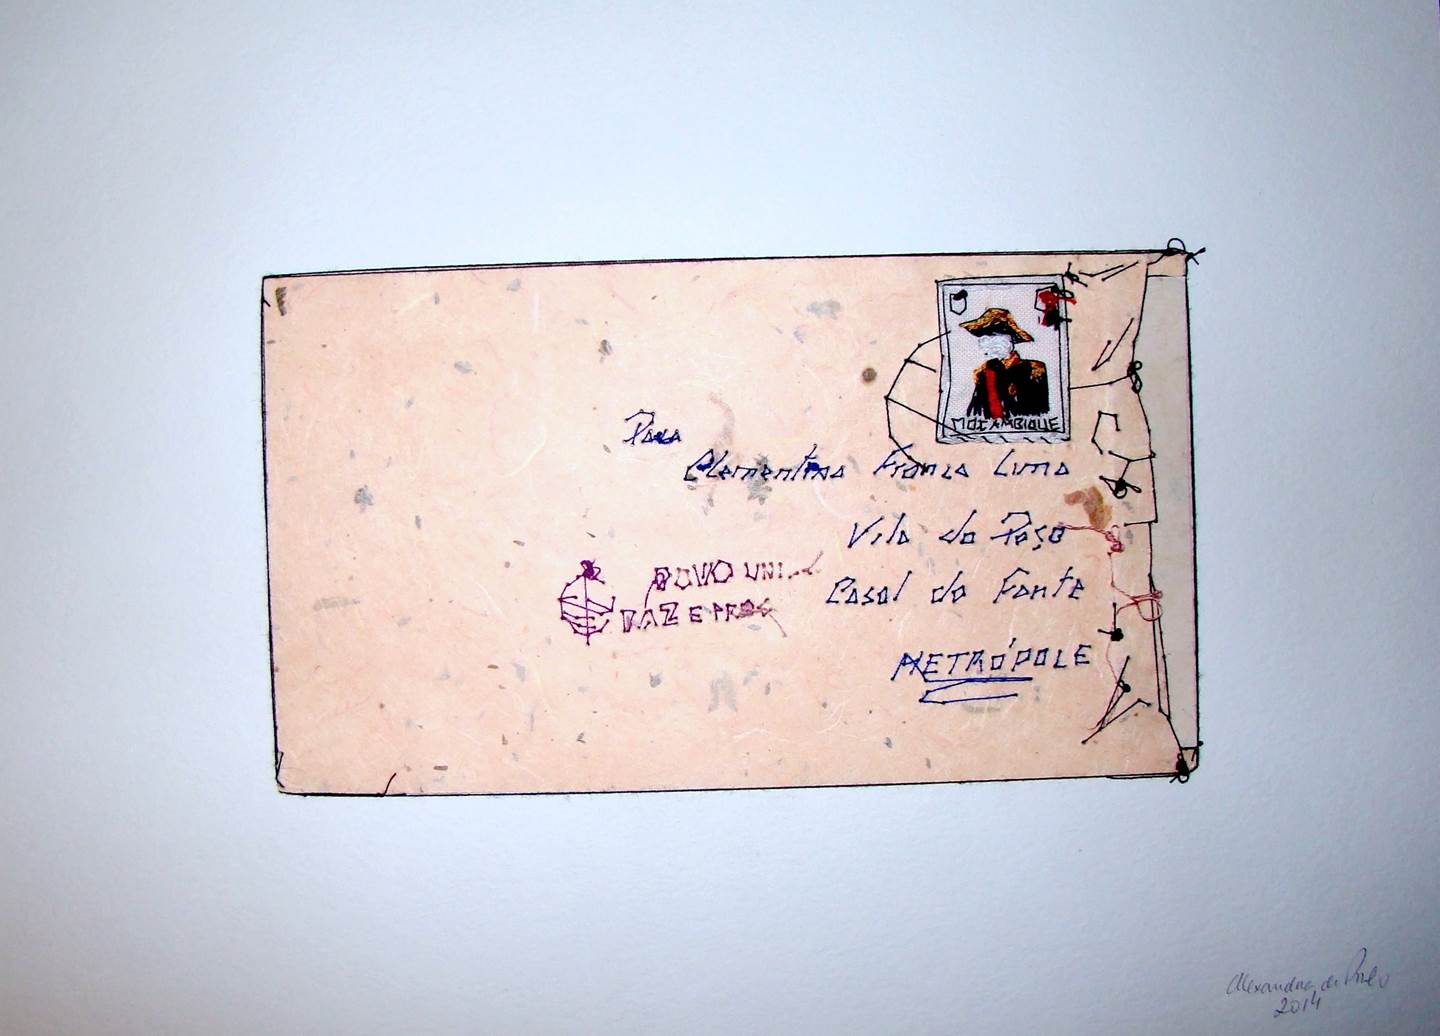 Carta de Moçambique, original   Dessin et illustration par Alexandra de Pinho